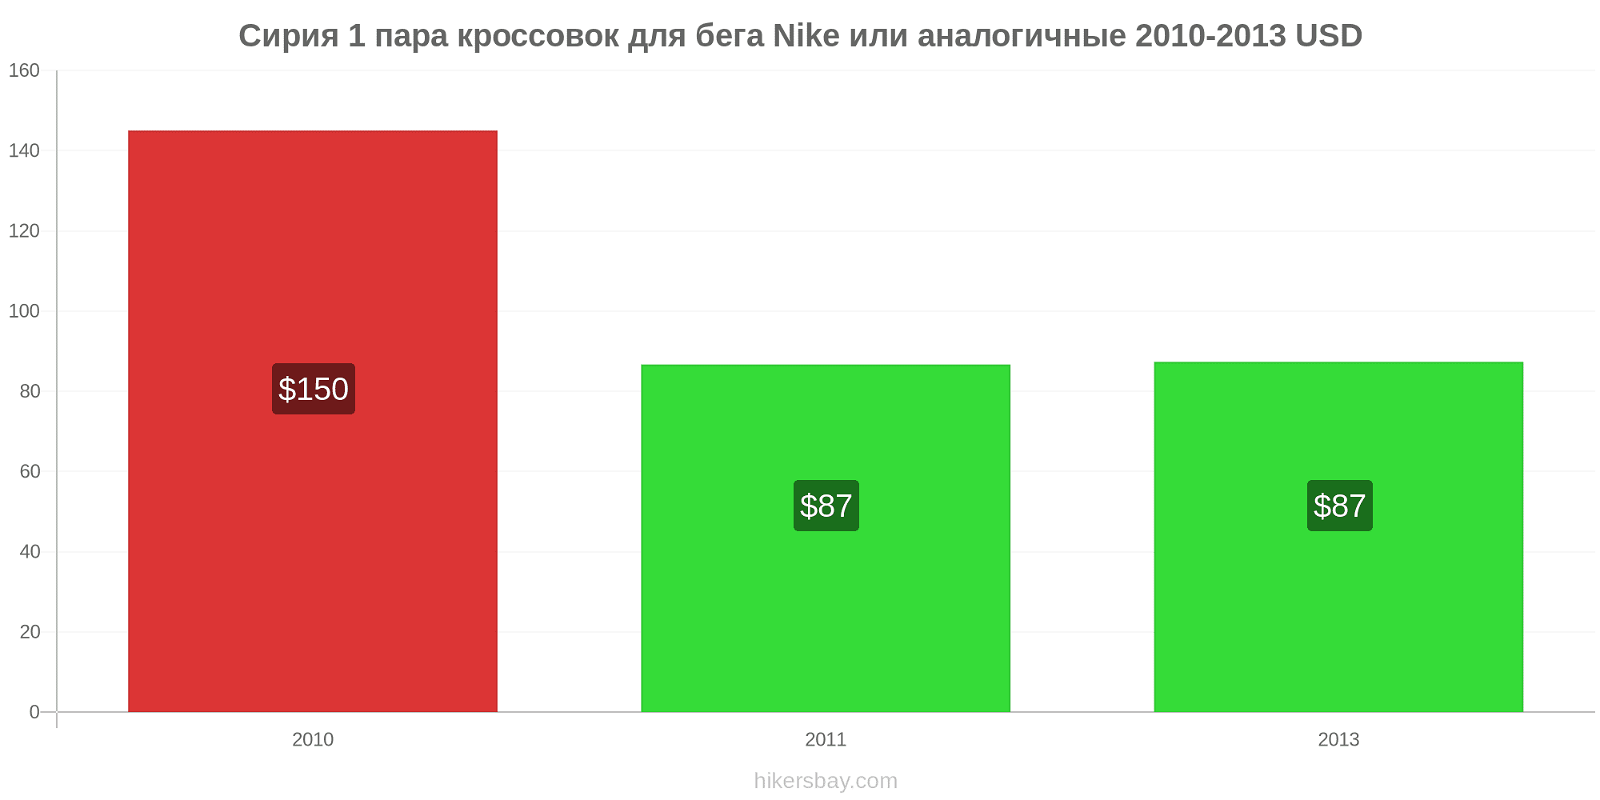 Сирия изменения цен 1 пара кроссовок для бега Nike или аналогичные hikersbay.com